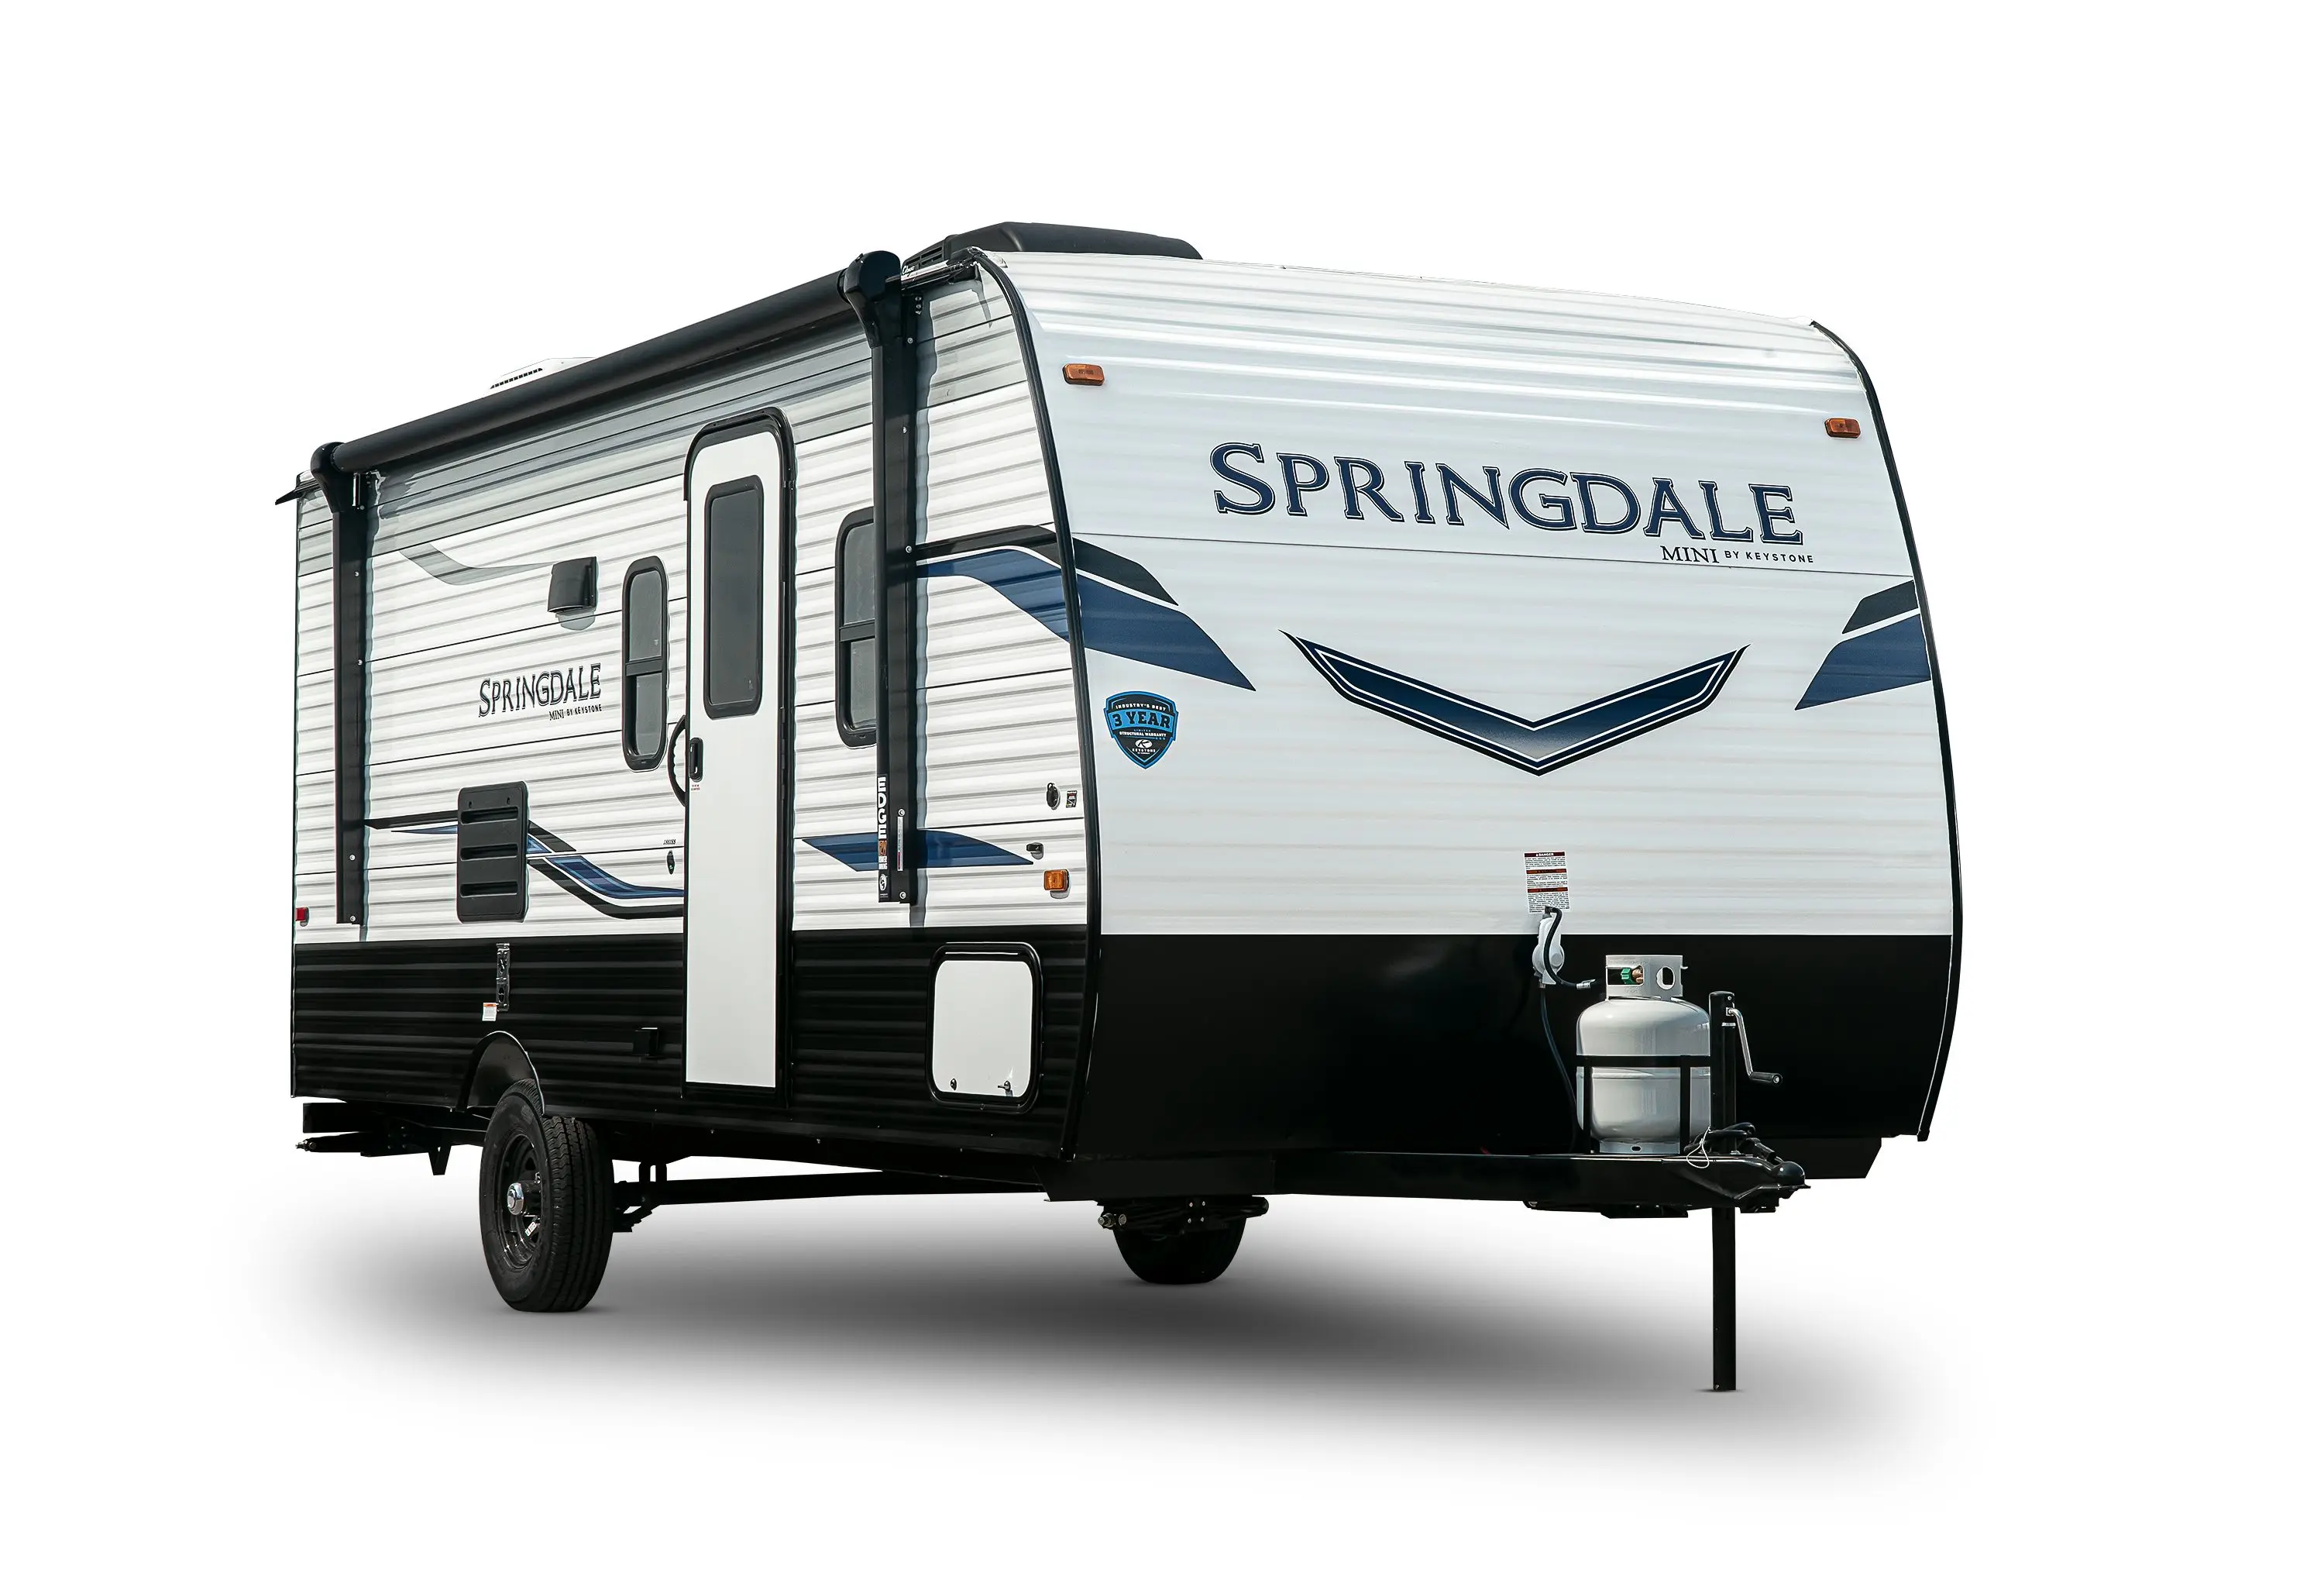 Springdale Mini Travel Trailer